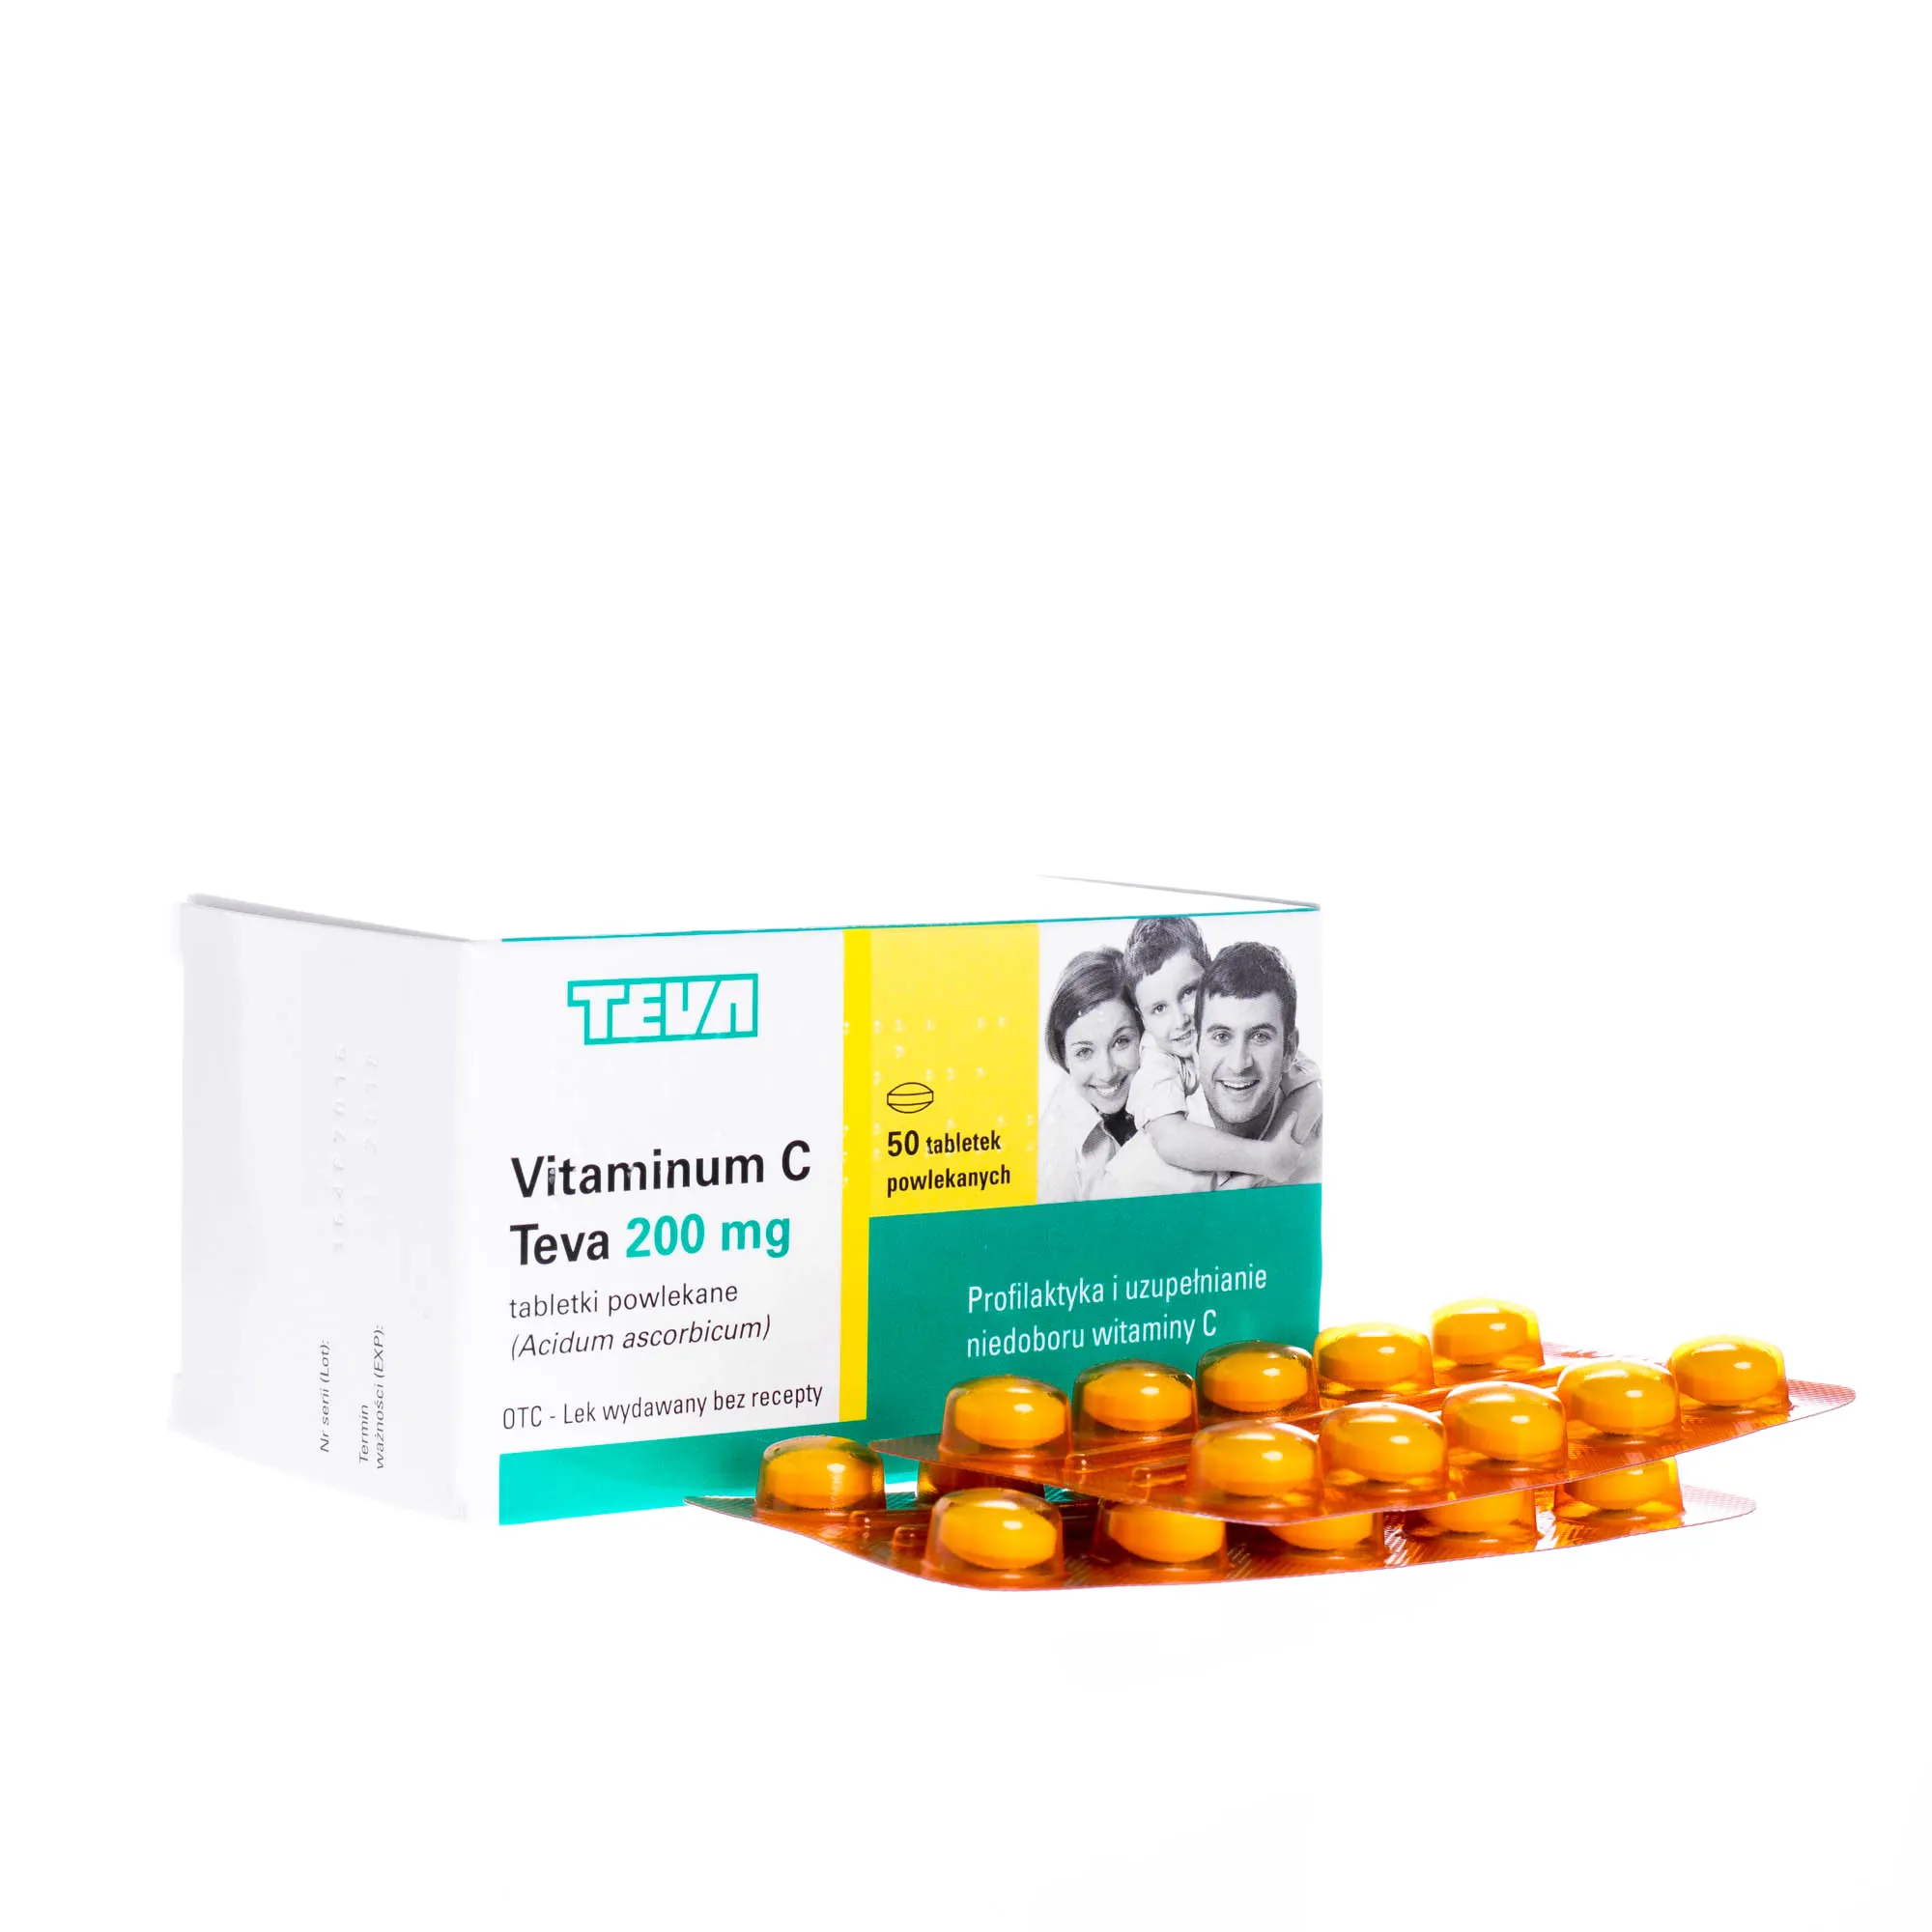 Vitaminum C Teva 200 mg - 50 tabletek powlekanych stosowanych w celu uzupełnienia wit. C